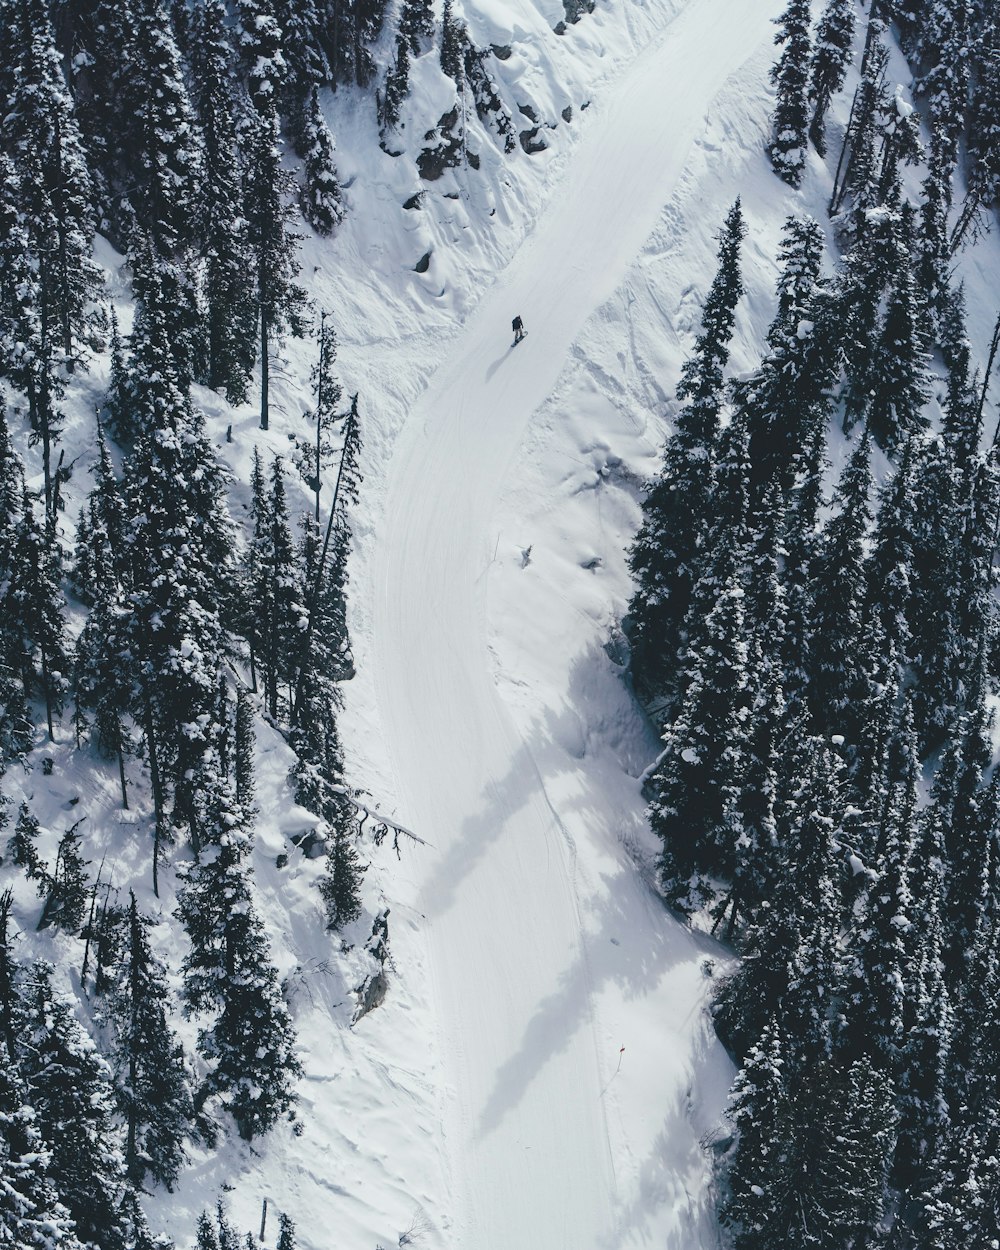 fotografia aerea di una persona che scia sulla montagna di neve \